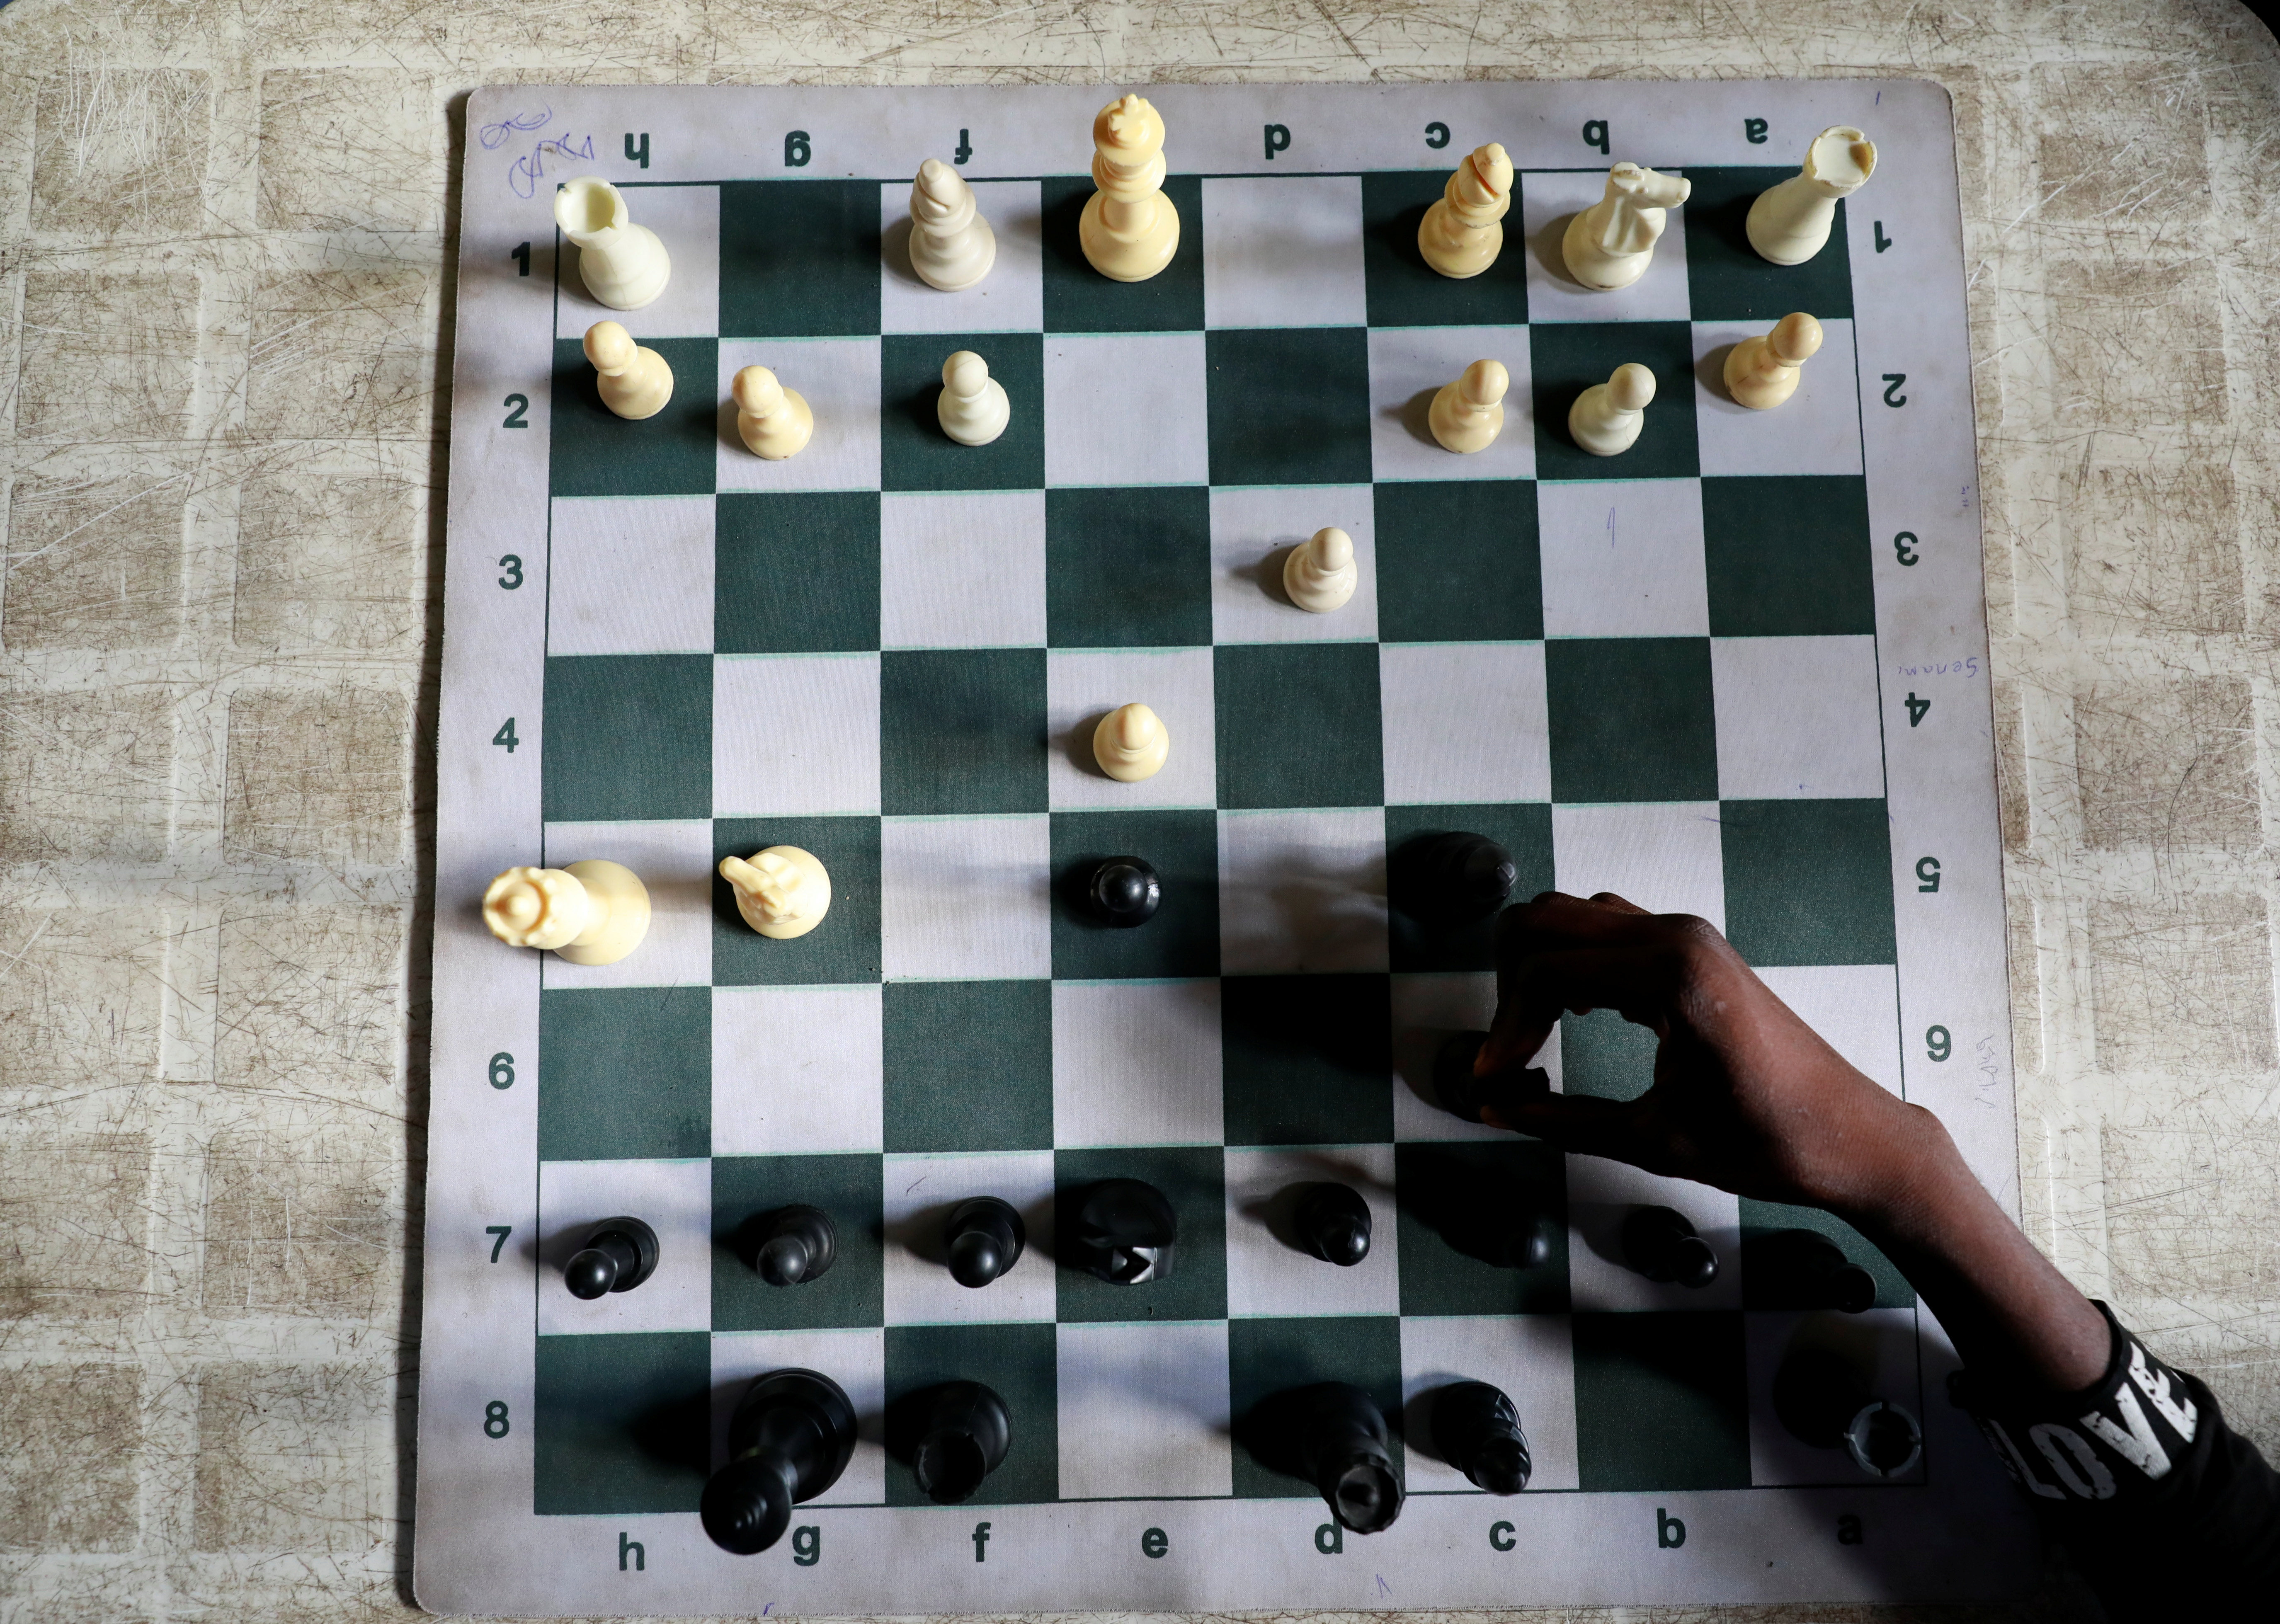 es una partida de ajedrez infinita entre dos inteligencias artificiales - Infobae